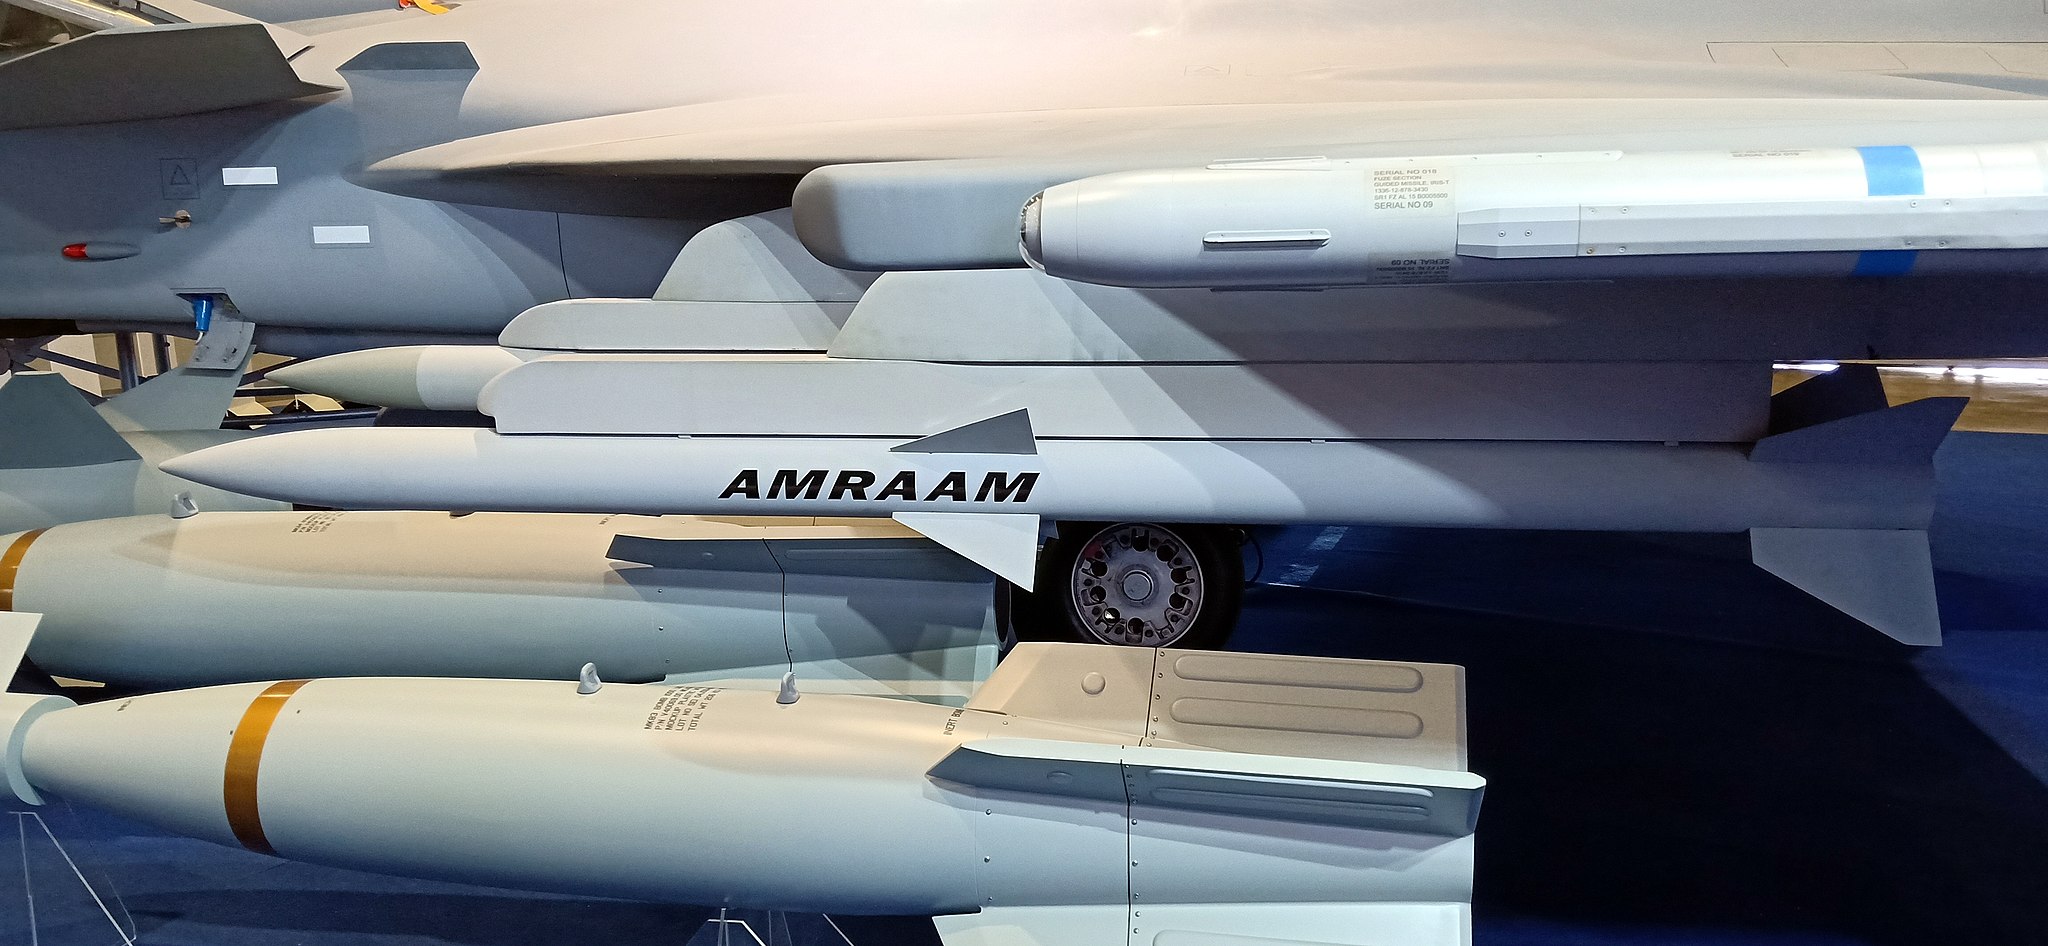 An AIM-120 Advanced Medium-Range Air-to-Air Missile (AMRAAM).